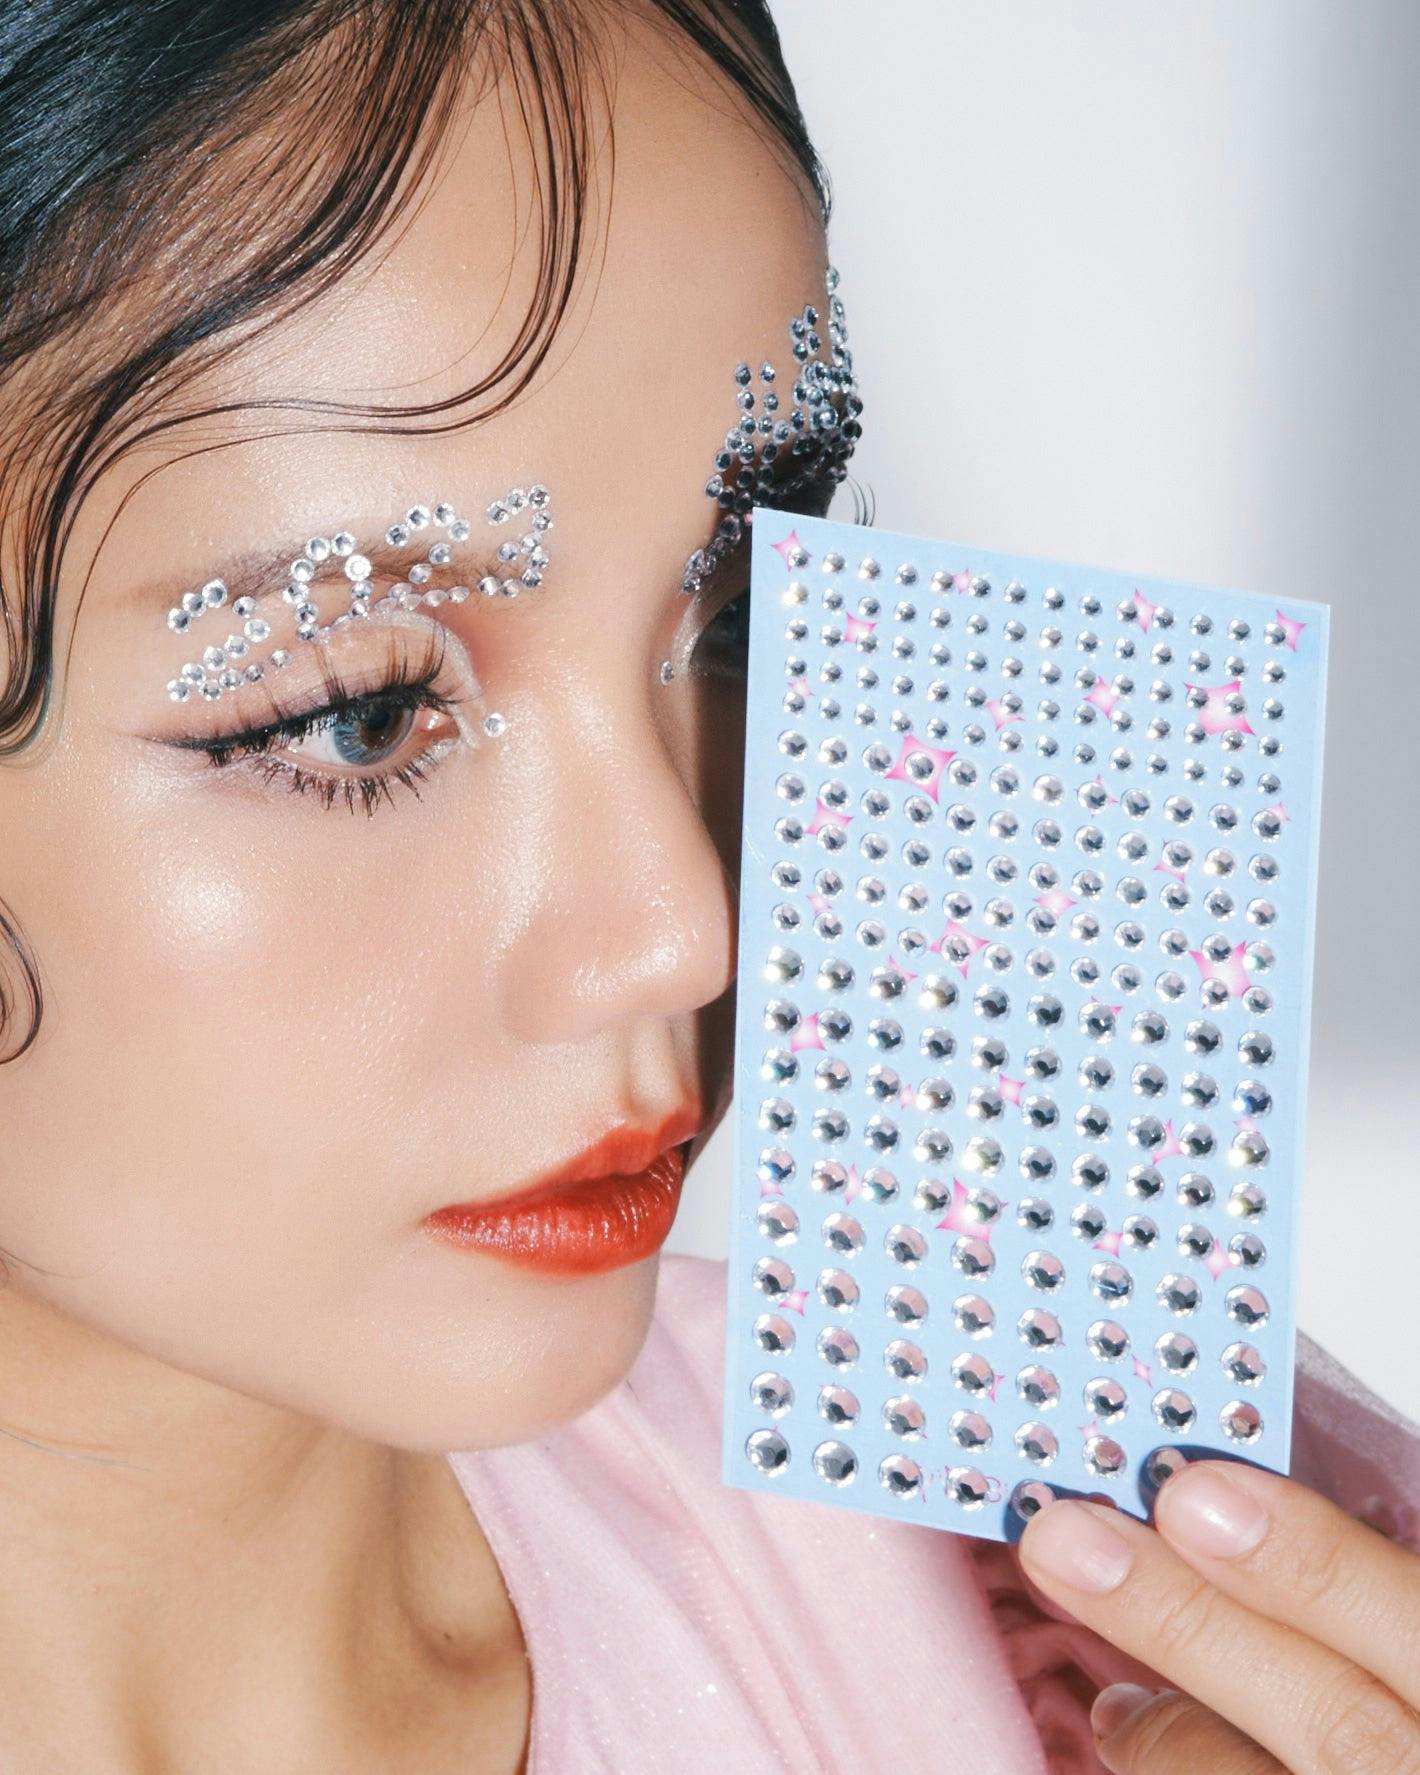 Kittie Yiyi Beauty - Diamond sticker